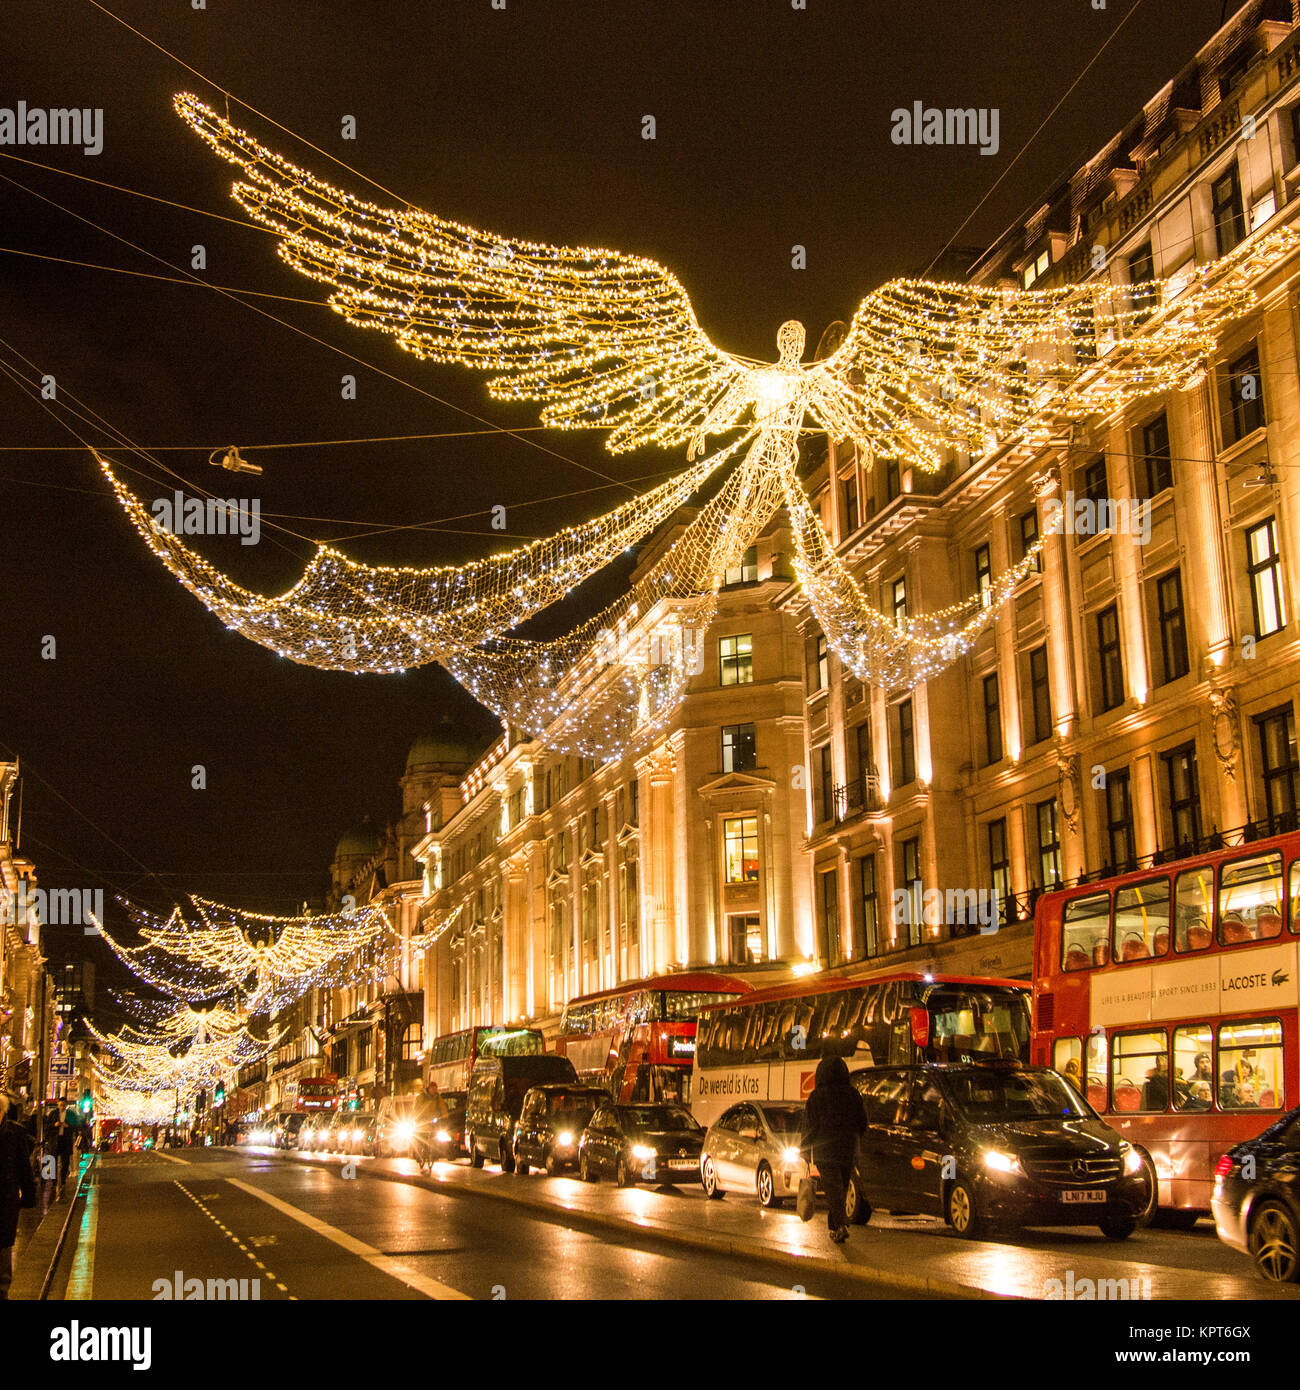 Le luci dell'auto riflettono il marciapiede sotto i festosi 'Angels' di Regent Street, Londra, Inghilterra Foto Stock